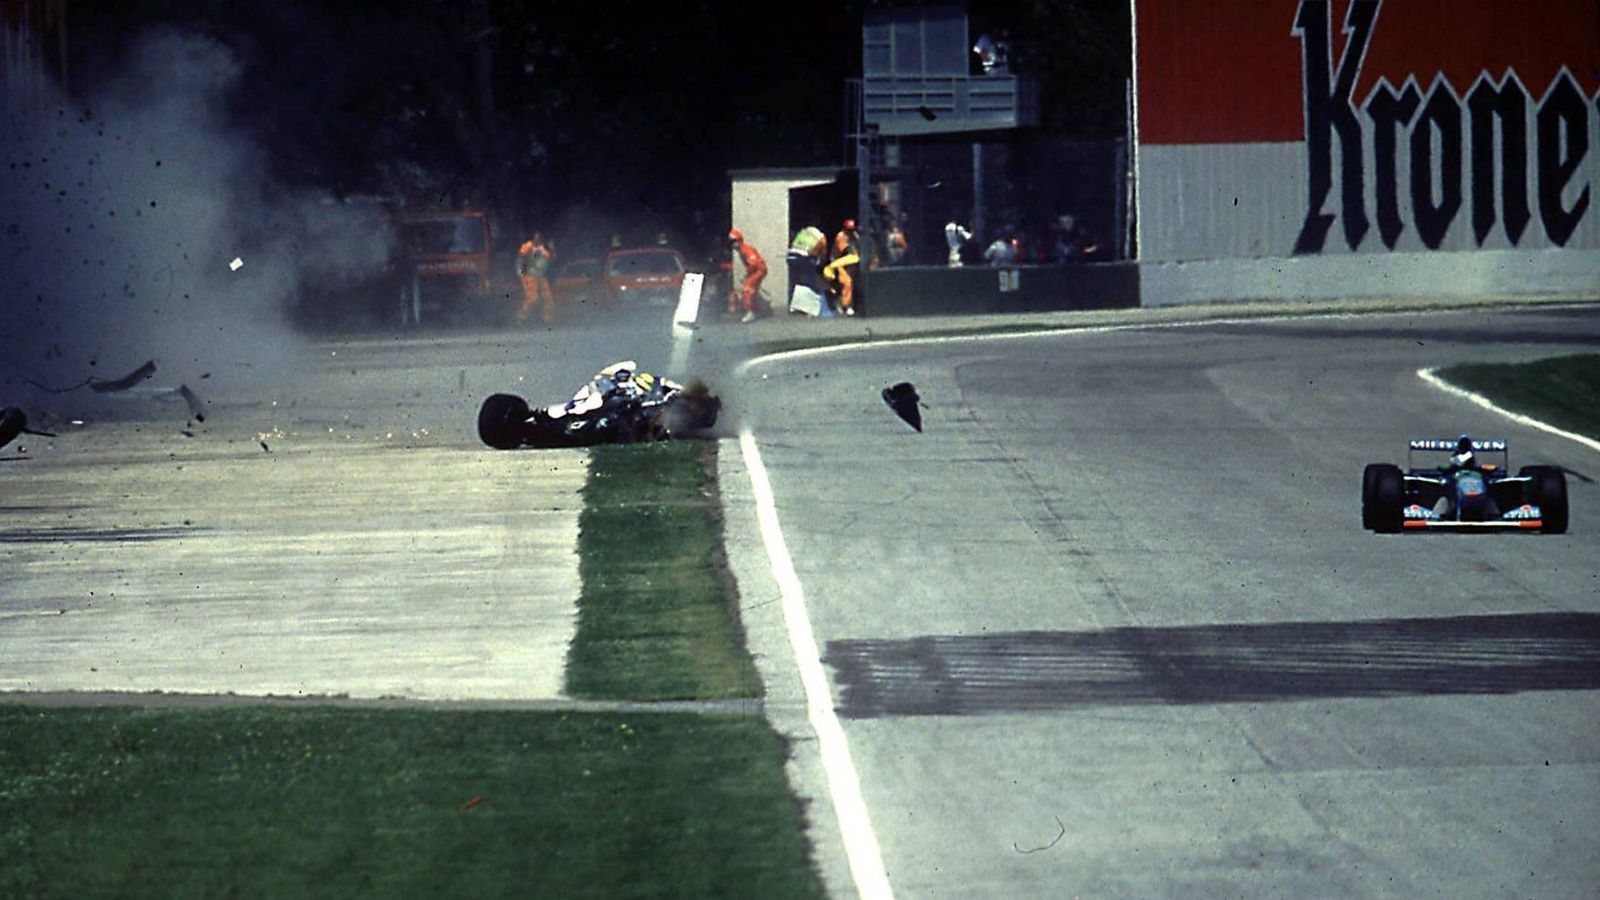 <strong>Ayrton Senna: Als die Formel 1 ihre Seele verlor</strong><br>
                Am 1. Mai 1994 verliert die Formel 1 ihre Inspiration, als Ayrton Senna stirbt. Ihre Seele. Ihr Leben. Das Rennwochenende in Imola verändert Vieles, aber auch Einiges zum Guten. Die Katastrophe baut sich damals über Tage auf.
